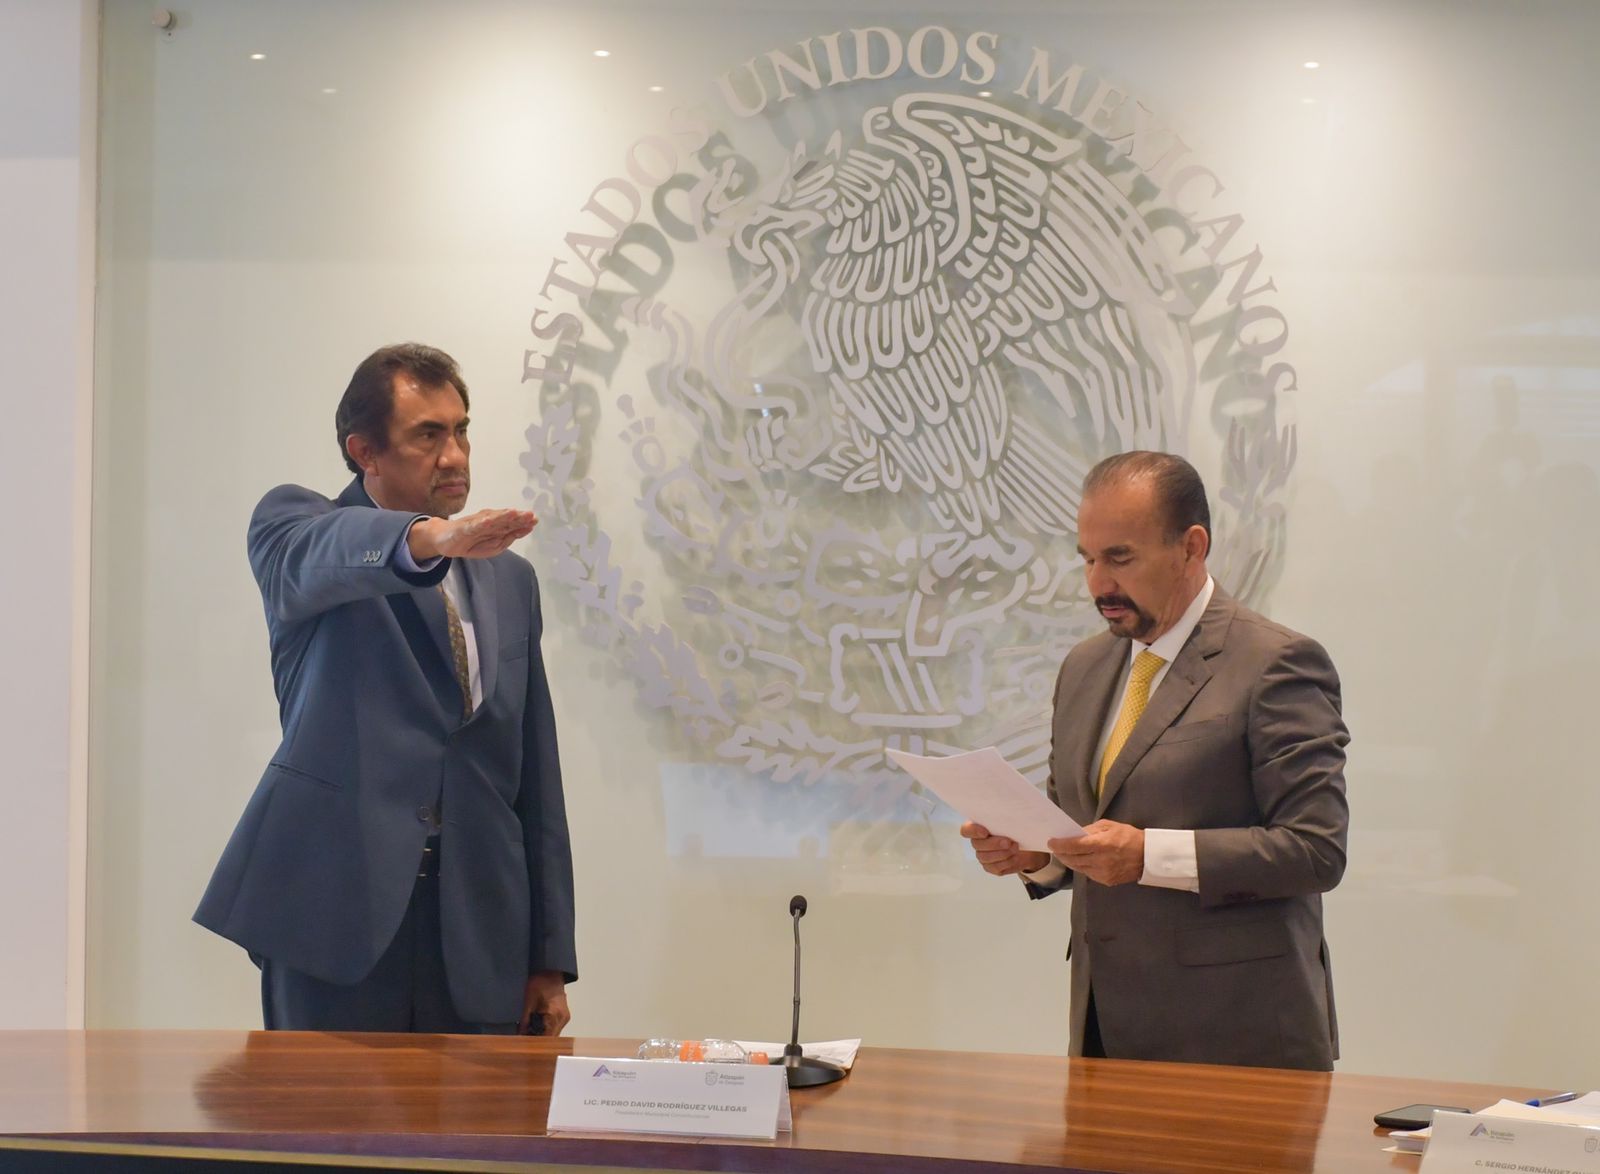 Jorge Vargas y Guadalupe Ortega son nombrados autoridades conciliadoras en Atizapán #regionmx 